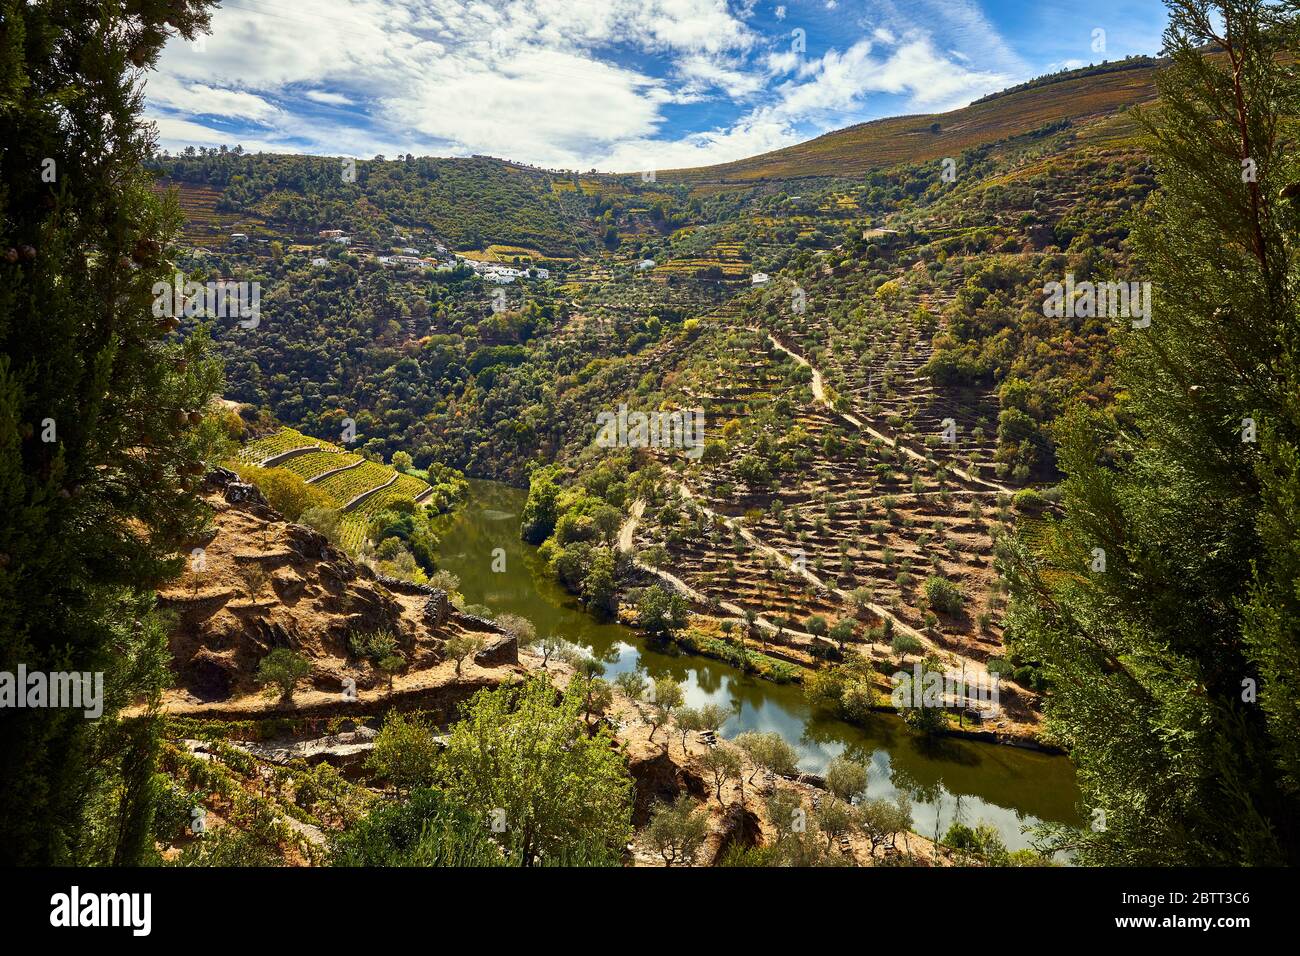 Das Douro River Valley im Norden Portugals ist die Geburtsstätte des Portweins. Die Region ist bekannt für seine Weinreben, Mandelbäume und Olivenbäume. Stockfoto